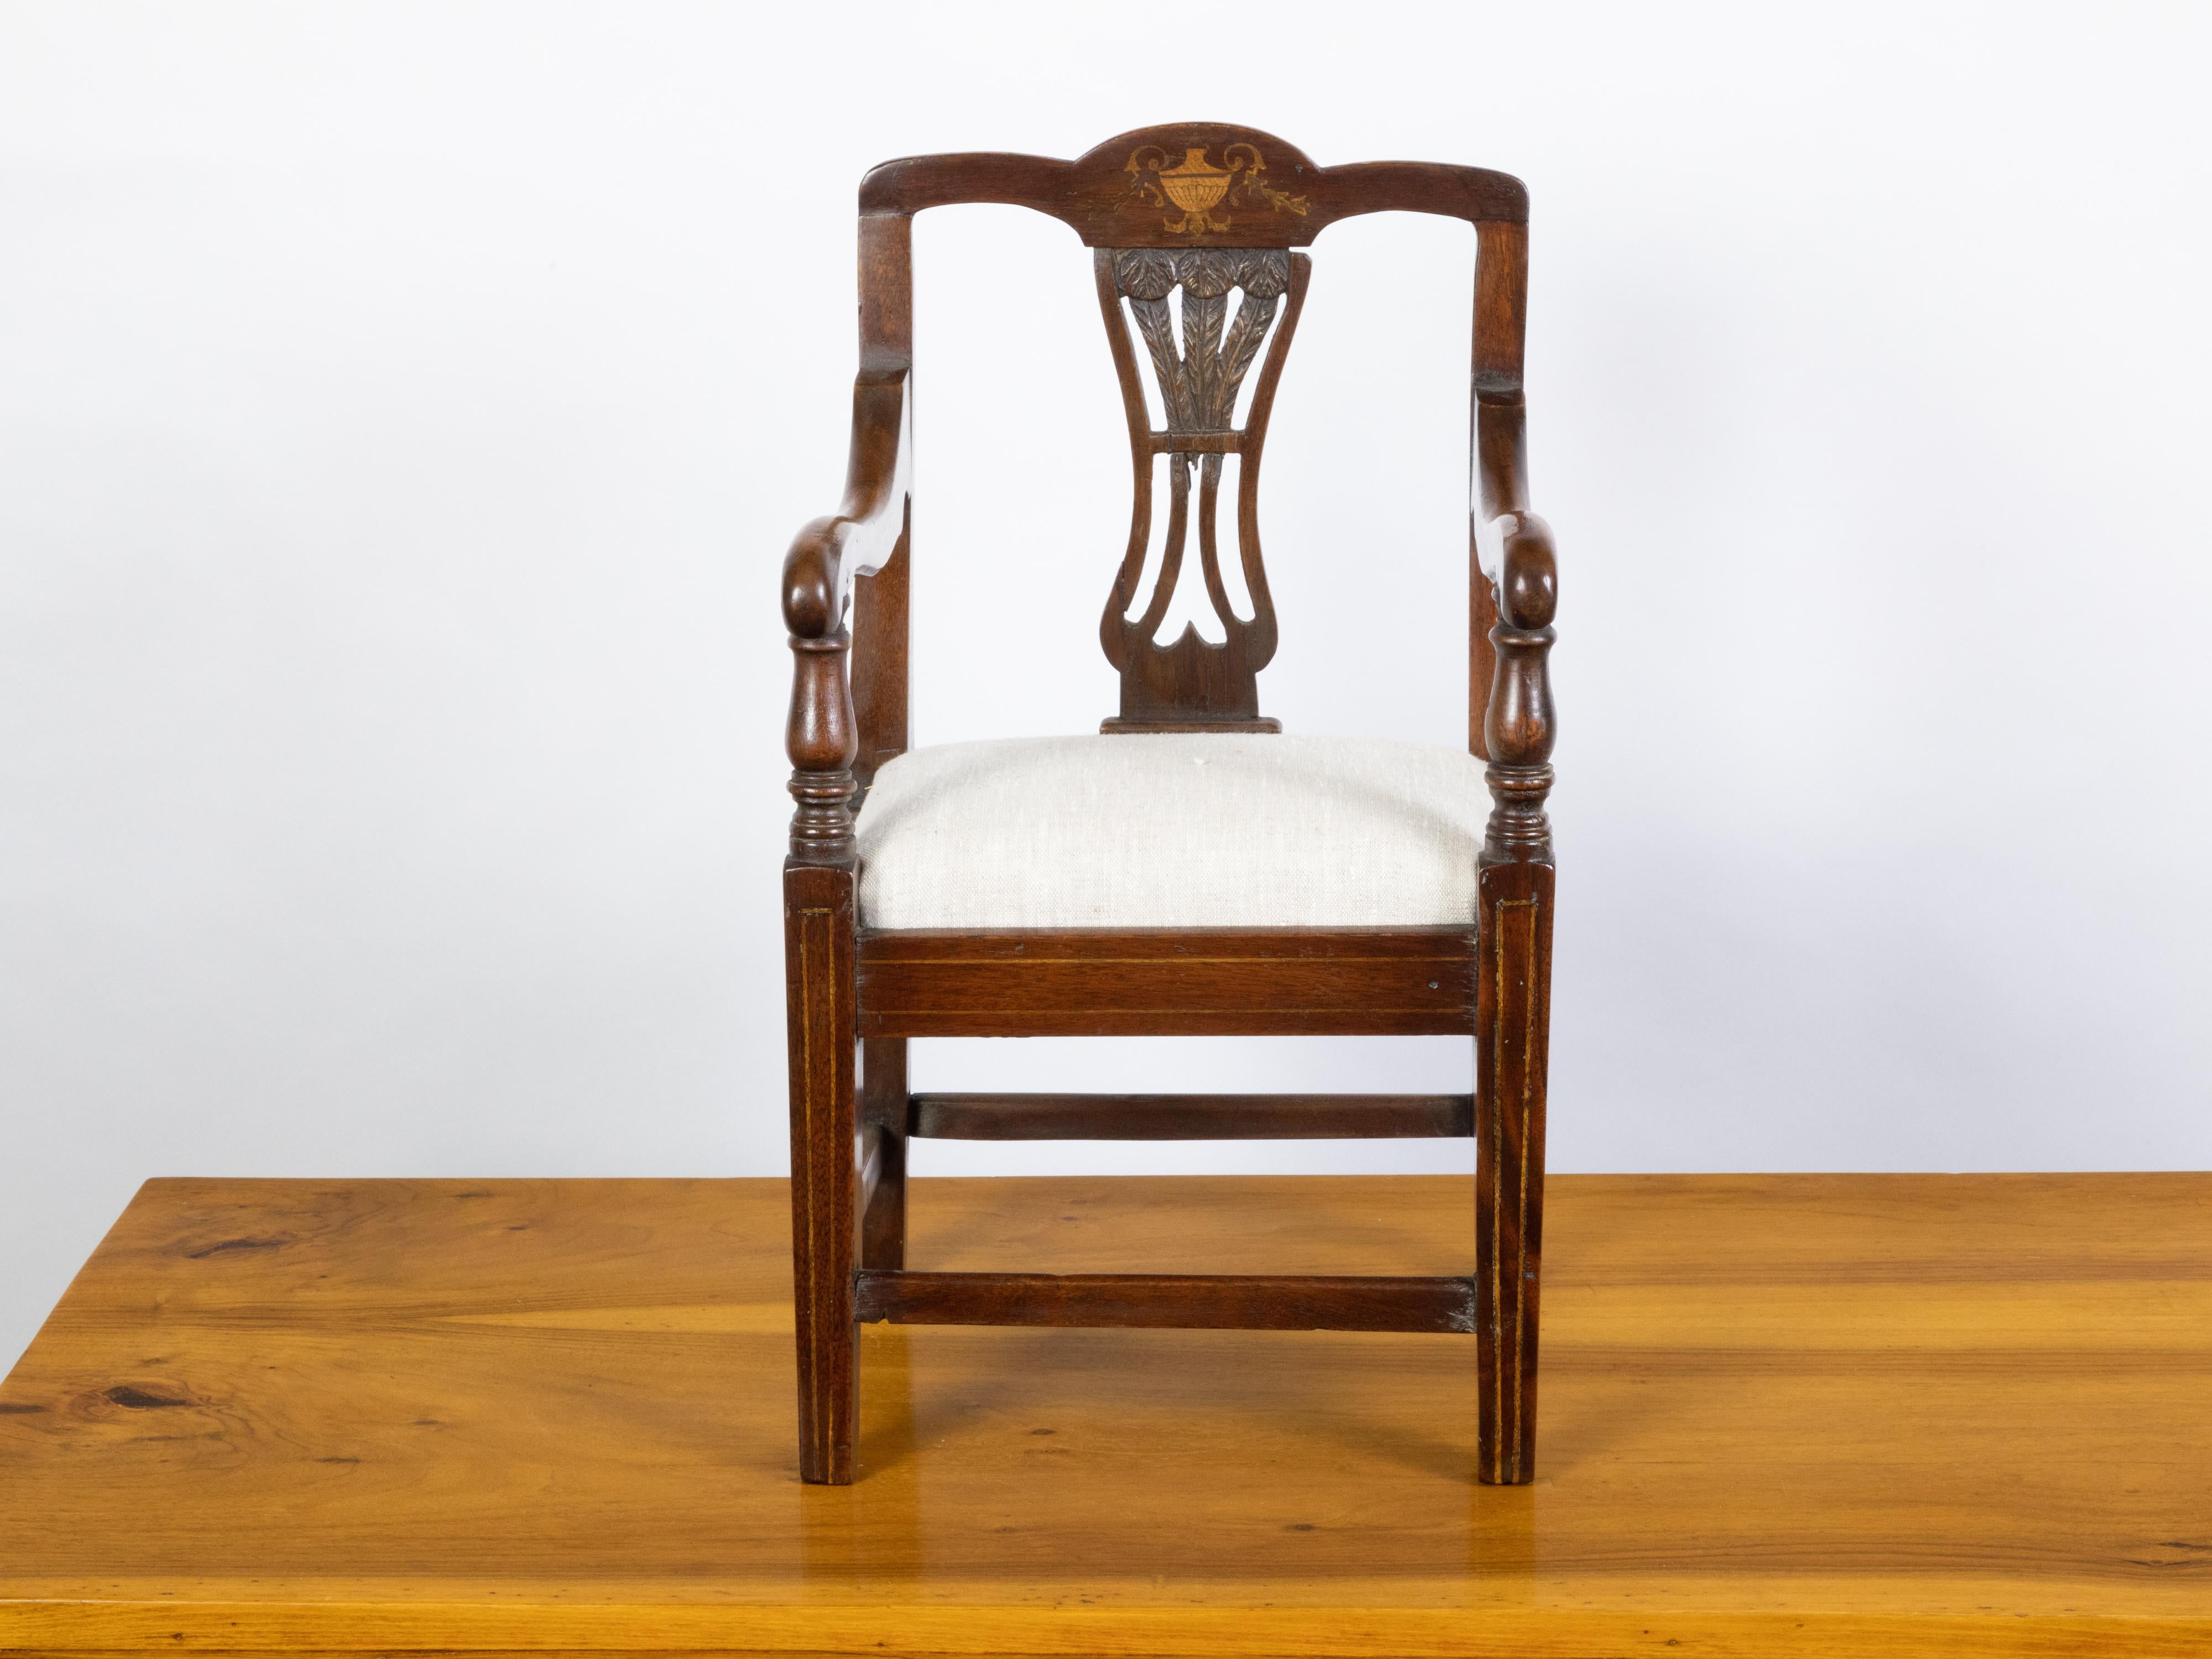 Chaise d'enfant anglaise en acajou du XIXe siècle, avec motifs de plumes et décor de marqueterie. Créée en Angleterre au XIXe siècle, cette petite chaise présente un dossier ouvert orné de motifs de plumes sur le dossier et d'une marqueterie d'urnes